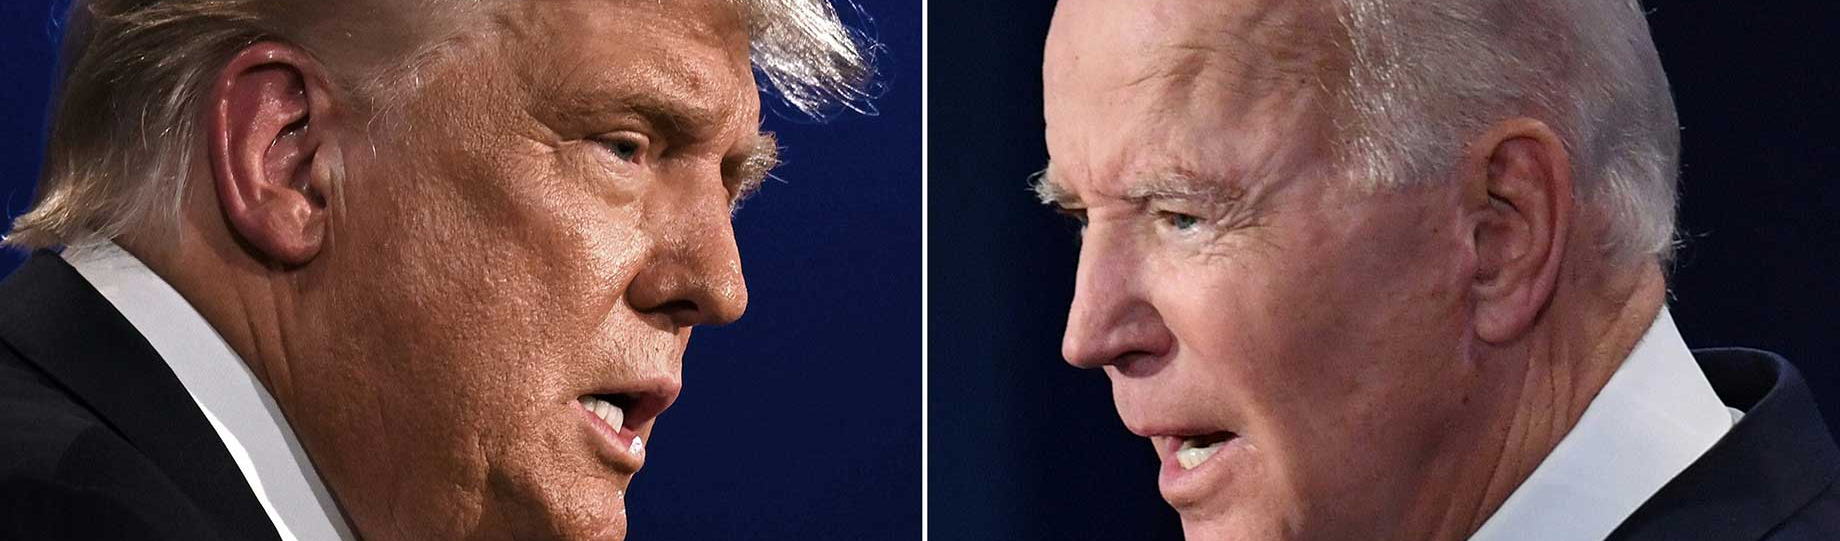 Governo Biden é incapaz de gerar apoio e entusiasmo no eleitorado, avaliam estrategistas